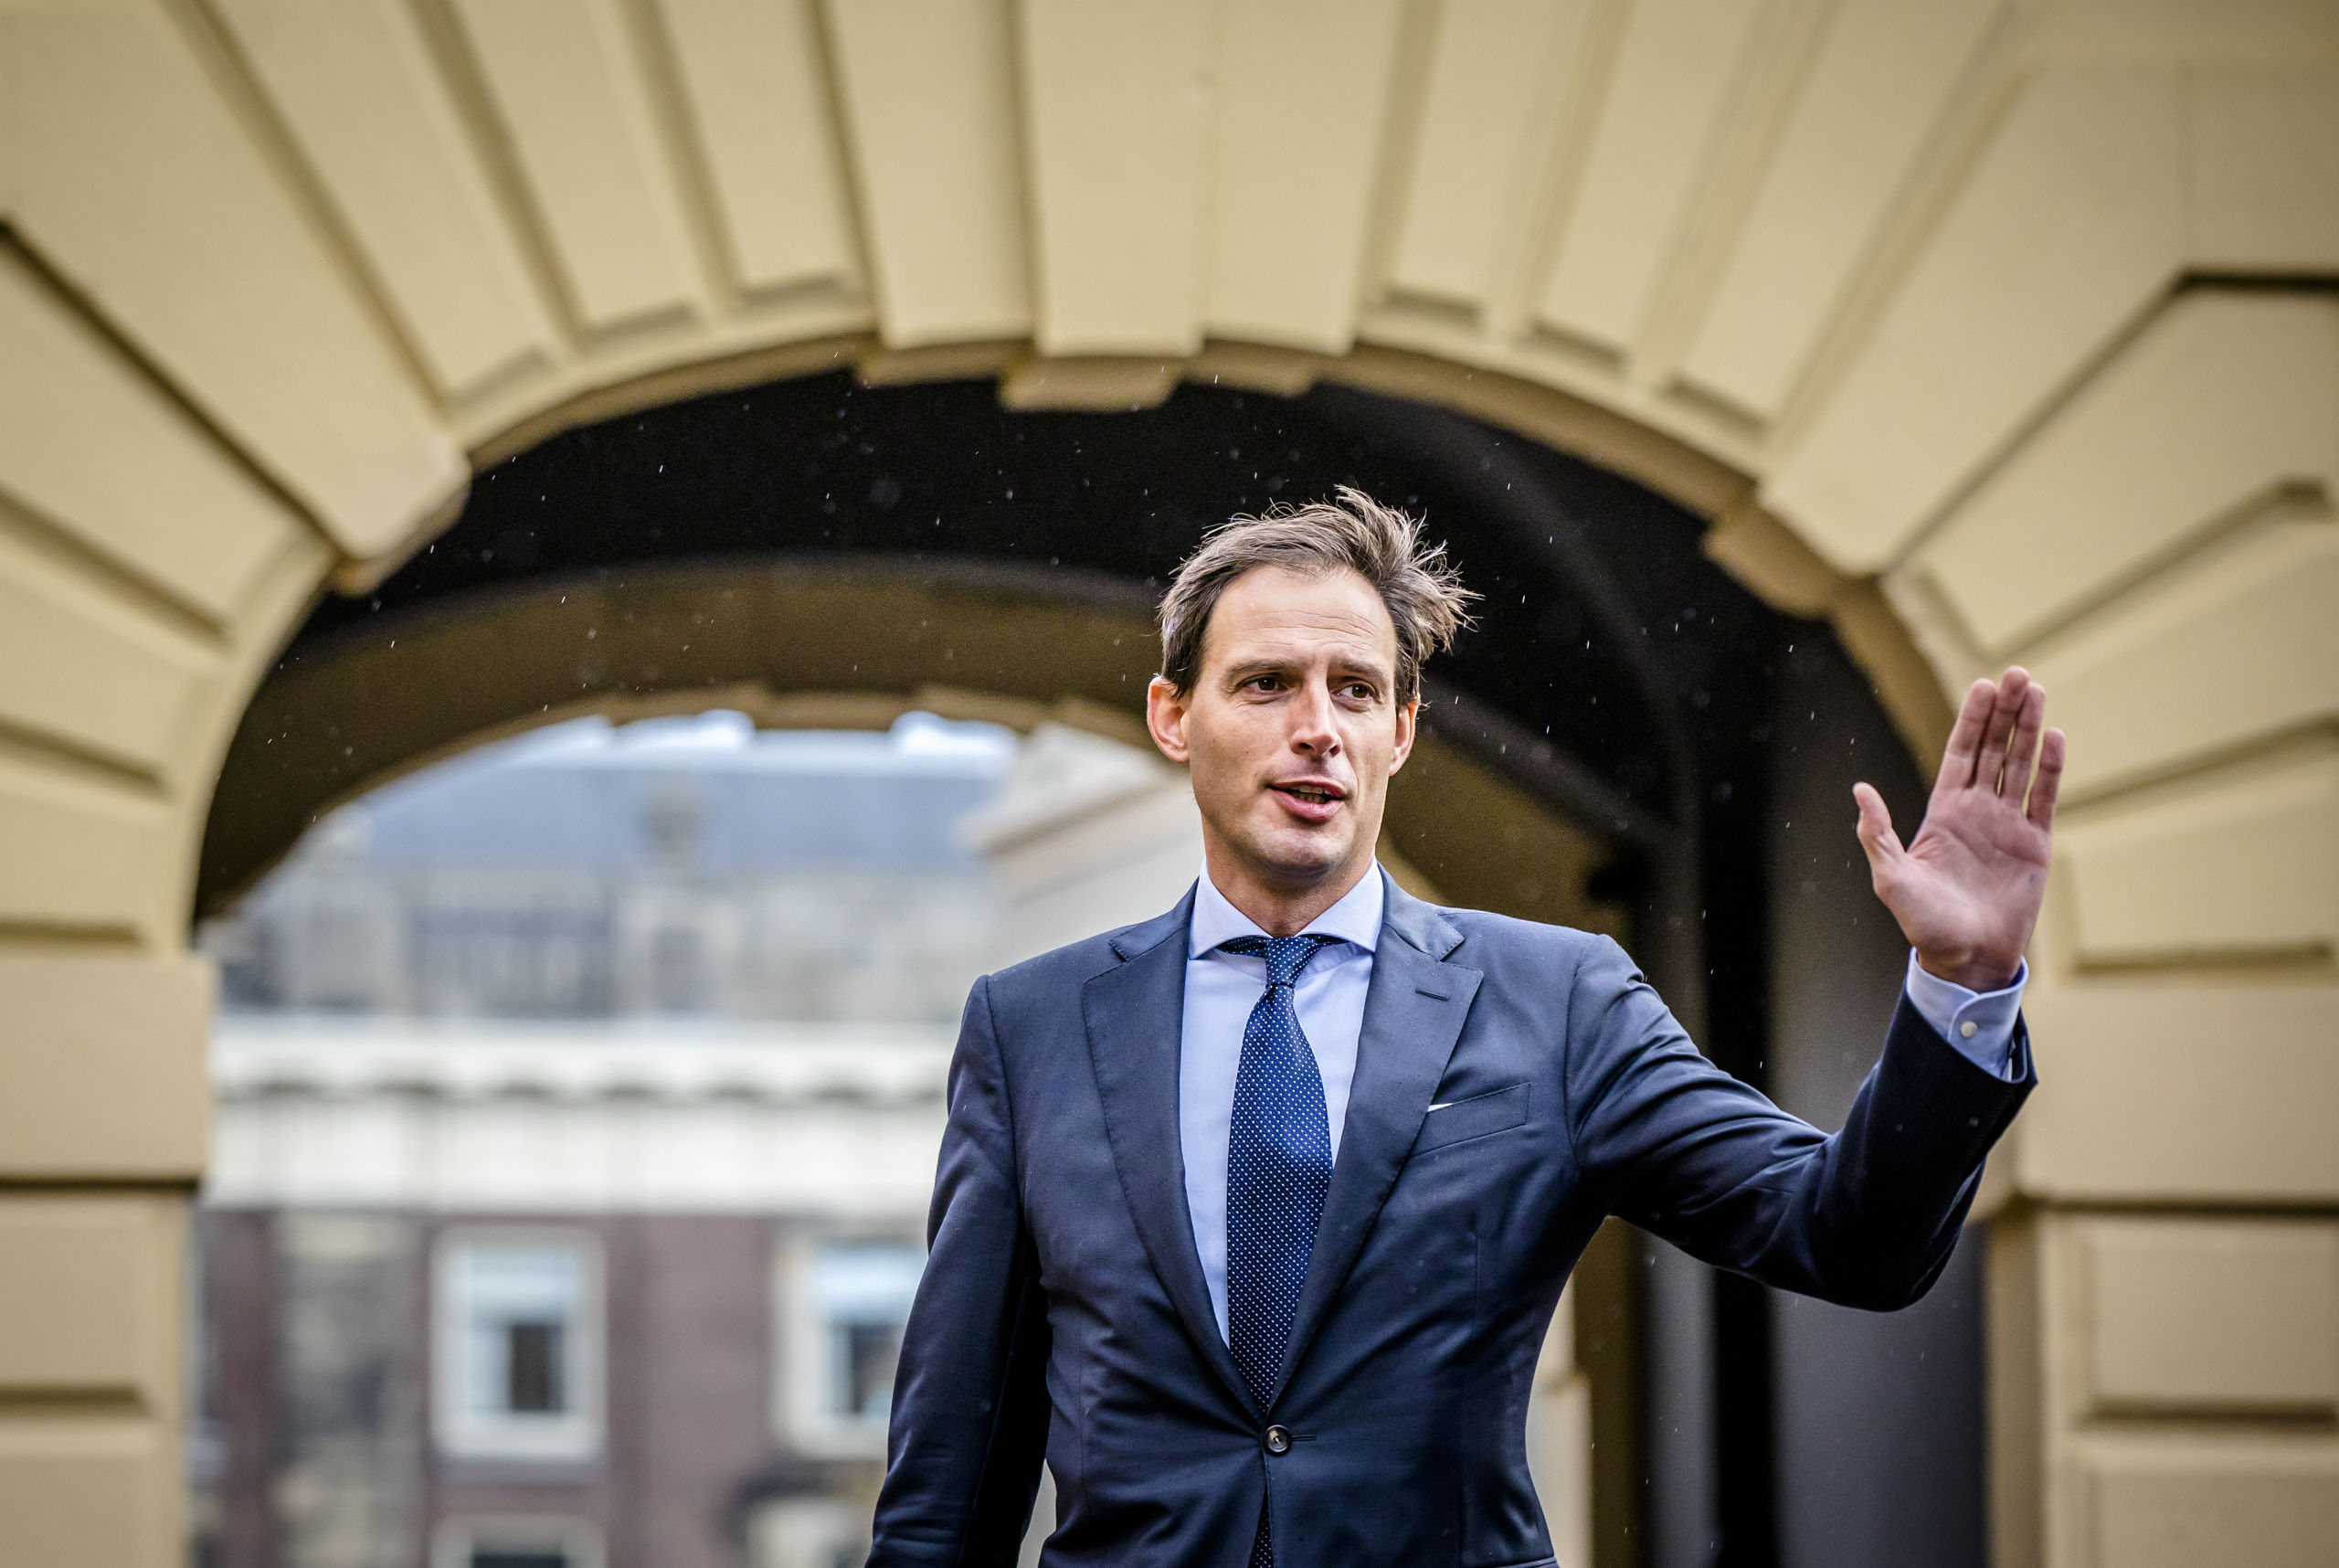 DEN HAAG - Minister Wopke Hoekstra van Financiën (CDA) bij aankomst op het Binnenhof voor de Ministerraad.